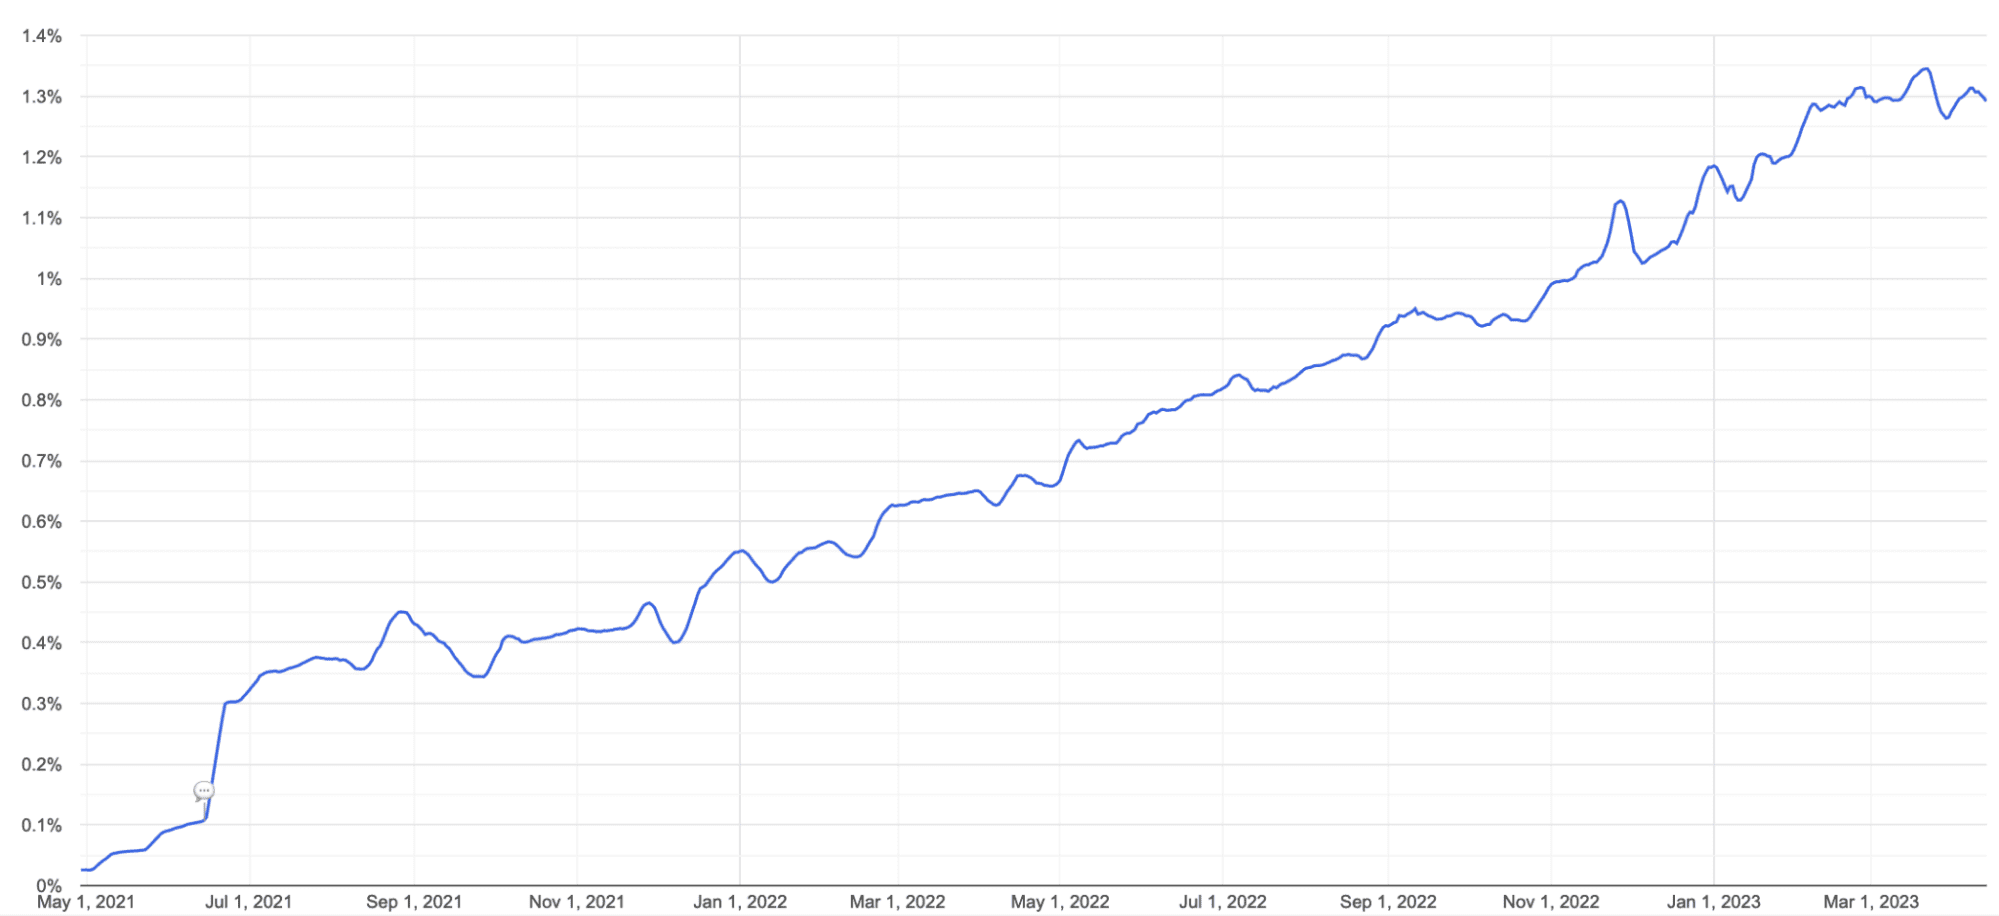 กราฟเส้นแสดงการใช้ AVIF ใน Chrome ตั้งแต่เดือนพฤษภาคม 2021 ถึงมีนาคม 2023 การรองรับเพิ่มขึ้นอย่างต่อเนื่องจาก 0% เหลือต่ำกว่า 1.4% เท่านั้น